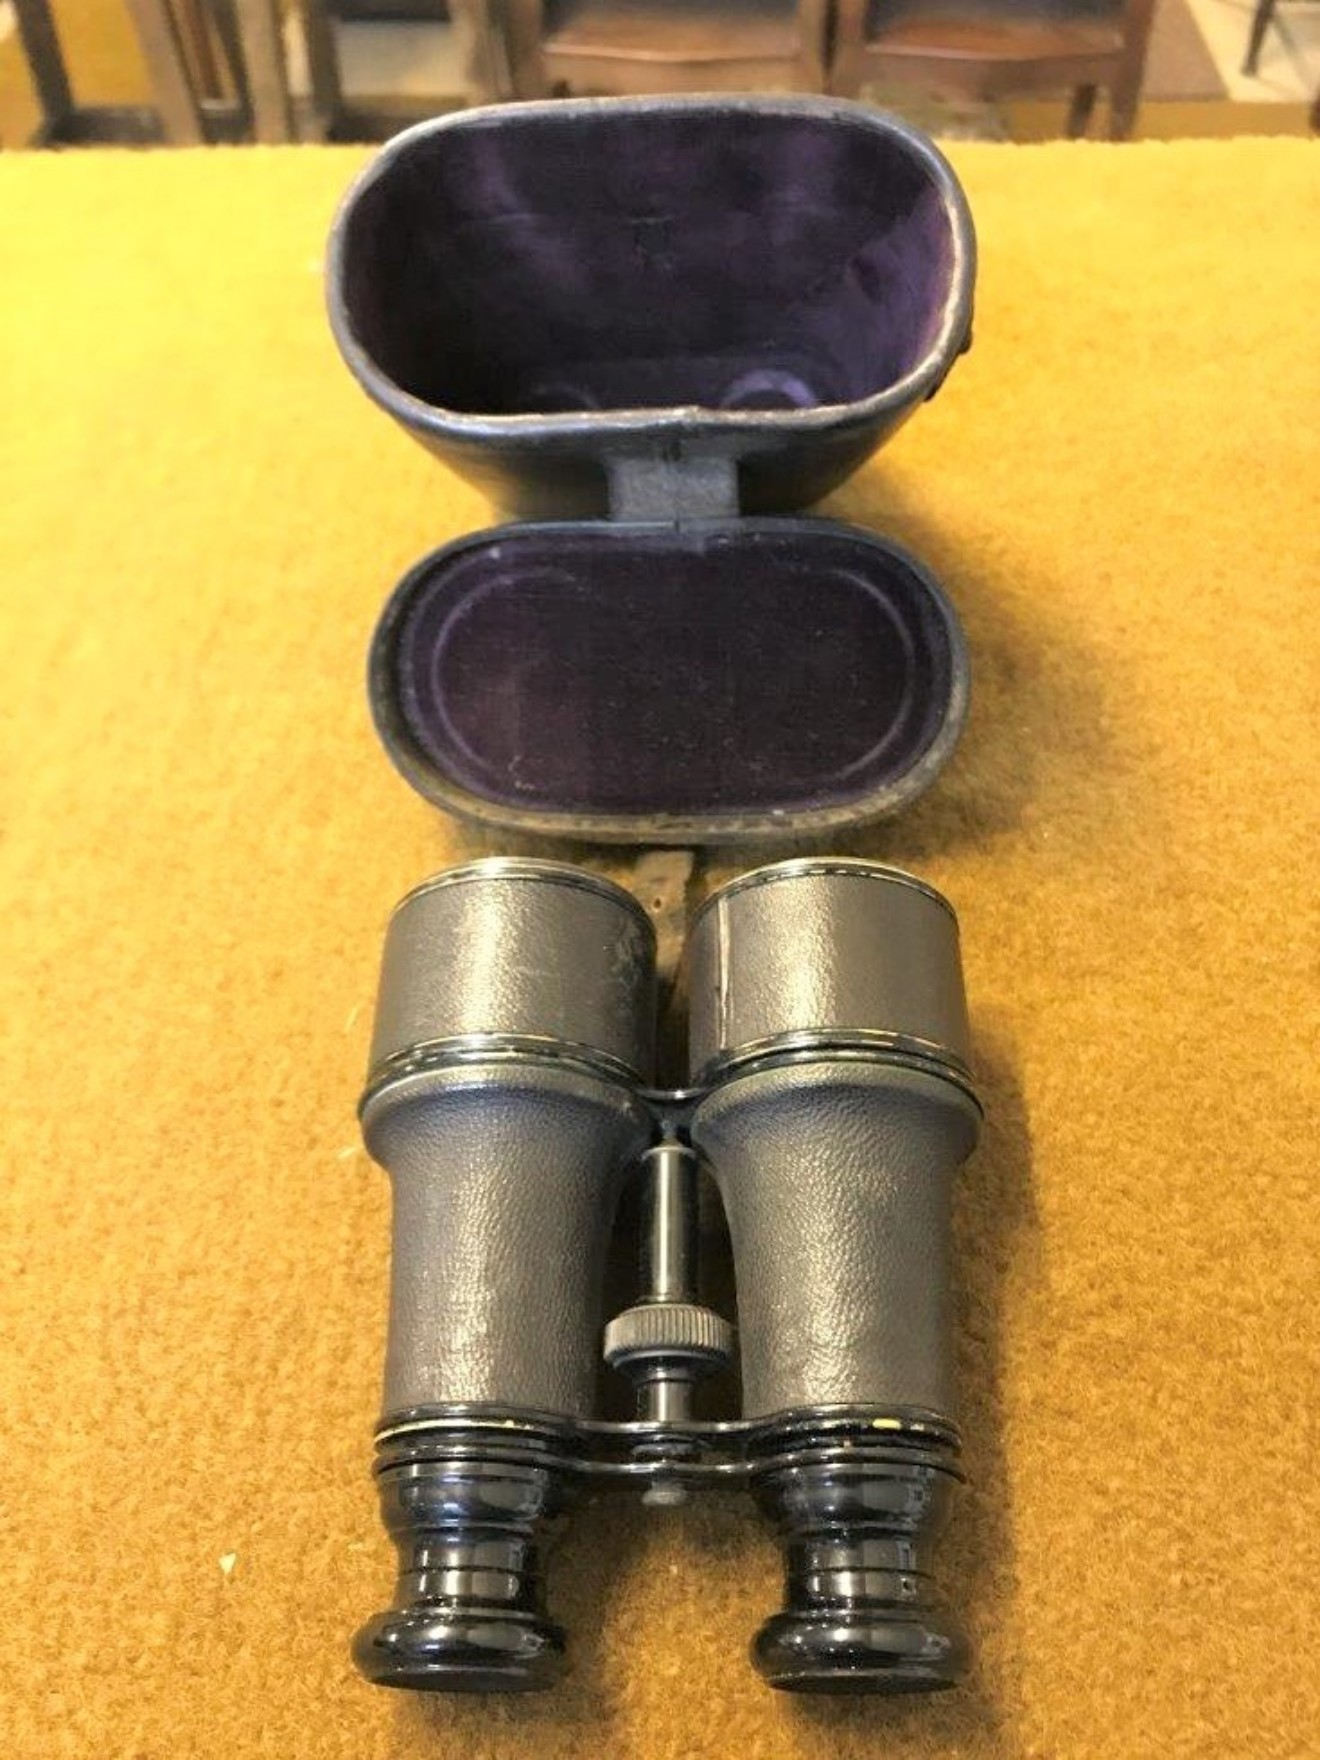 Pair of Binoculars / Galilean Field Glasses